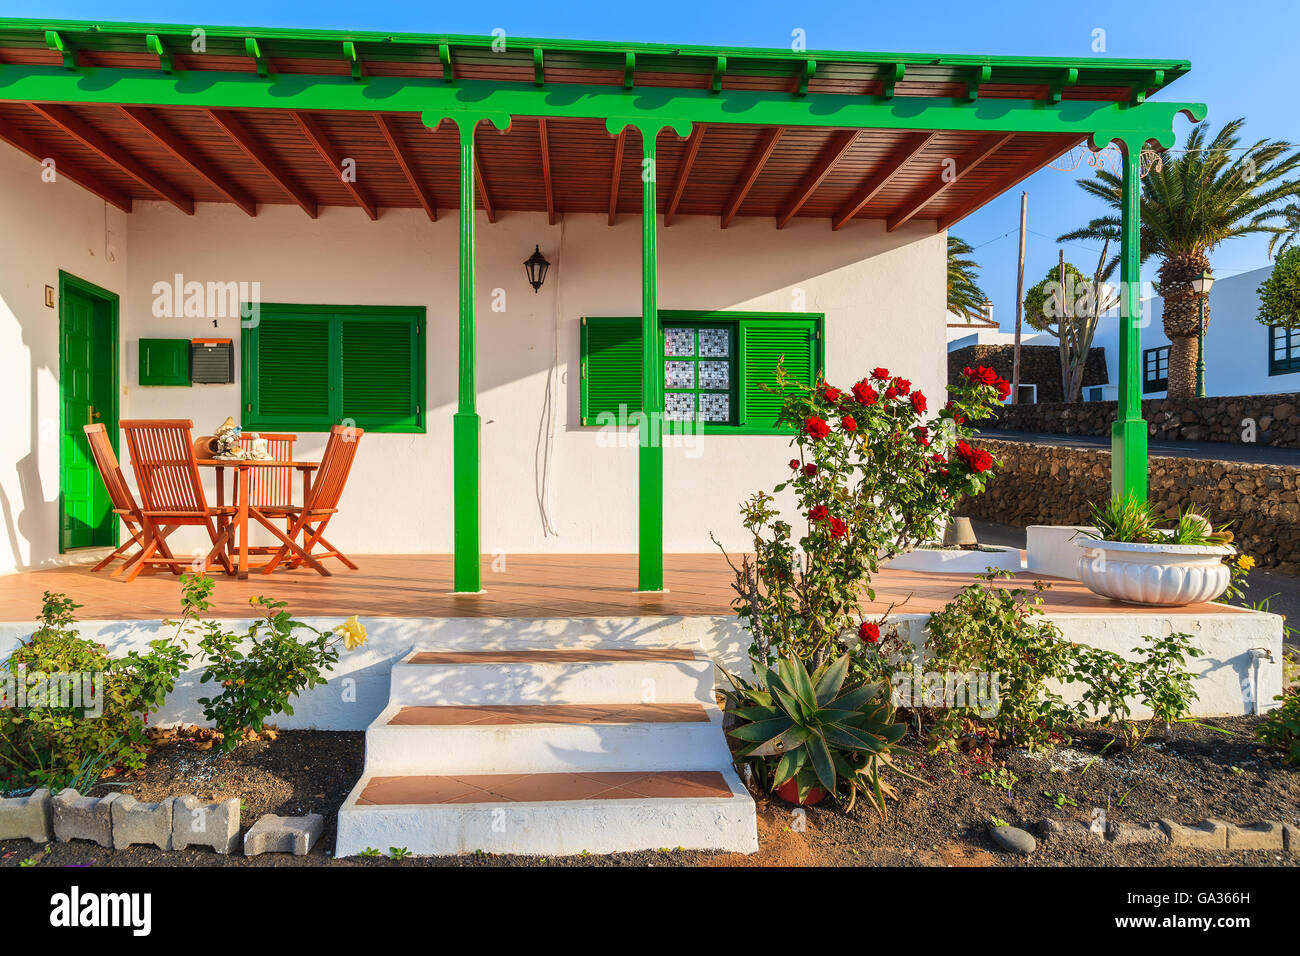 Insel LANZAROTE, Spanien - 15. Januar 2015: typische weiße Haus mit der grünen Tür und Fenster in Las Brenas Dorf. Insel Lanzarote ist beliebter Ort um Wohnimmobilien für Winterurlaub zu kaufen. Stockfoto